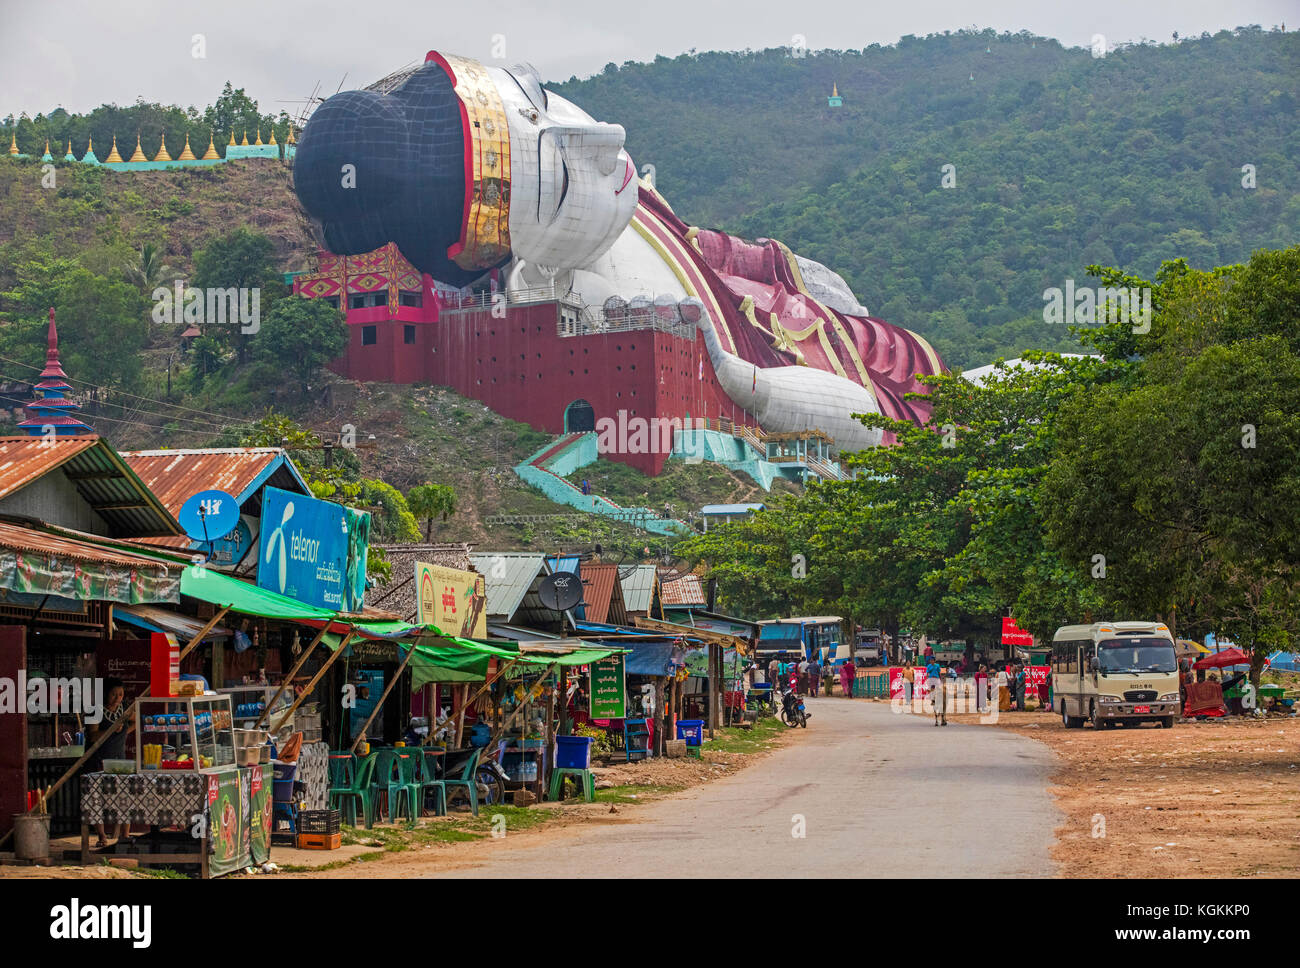 Win Sein Taw Ya / Win Sein reclining Buddha / Giant Buddha, world's largest reclining Budddha in Mudon, Mon State, Myanmar / Burma Stock Photo